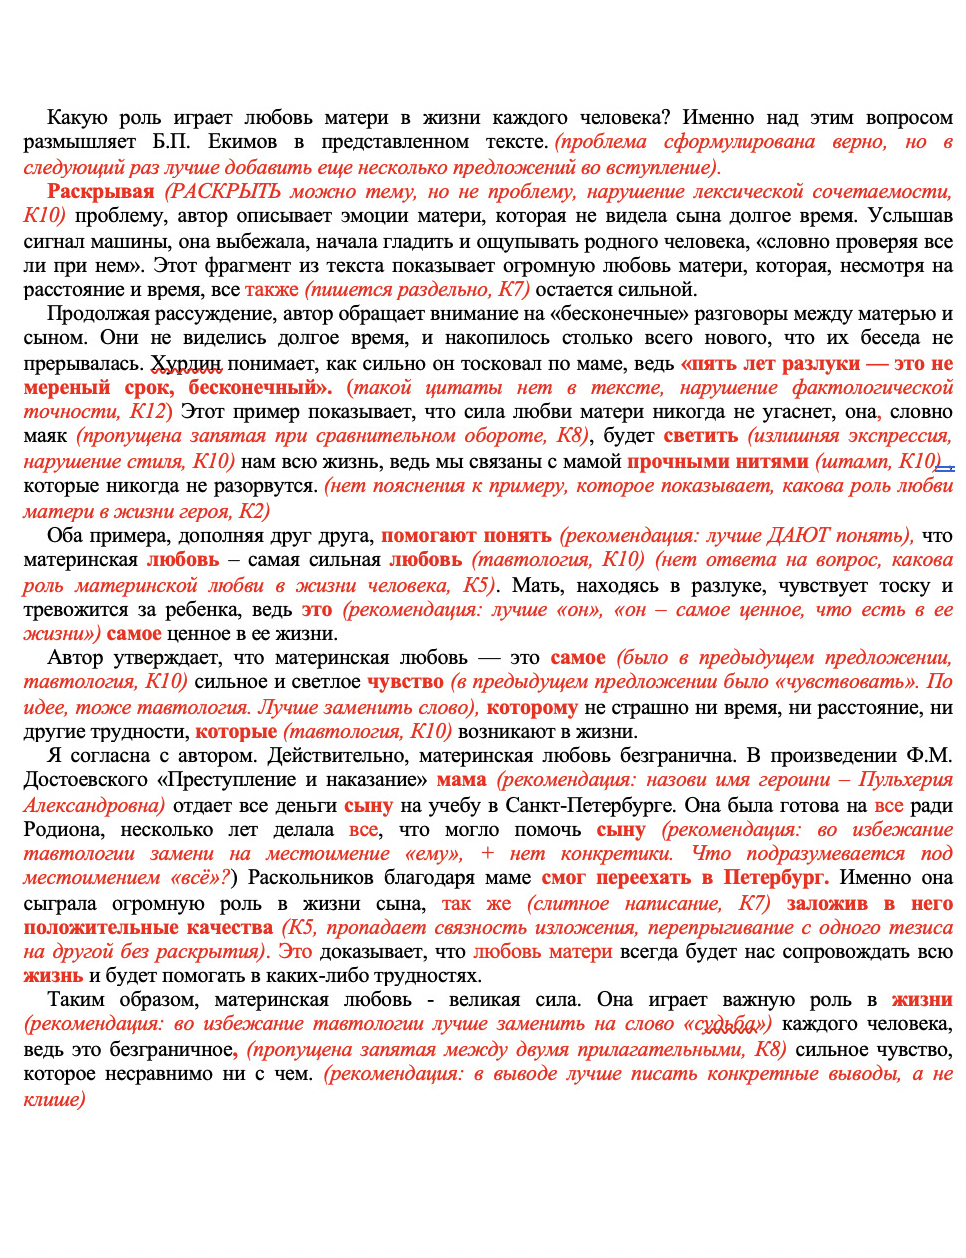 Пример проверки сочинения по русскому языку